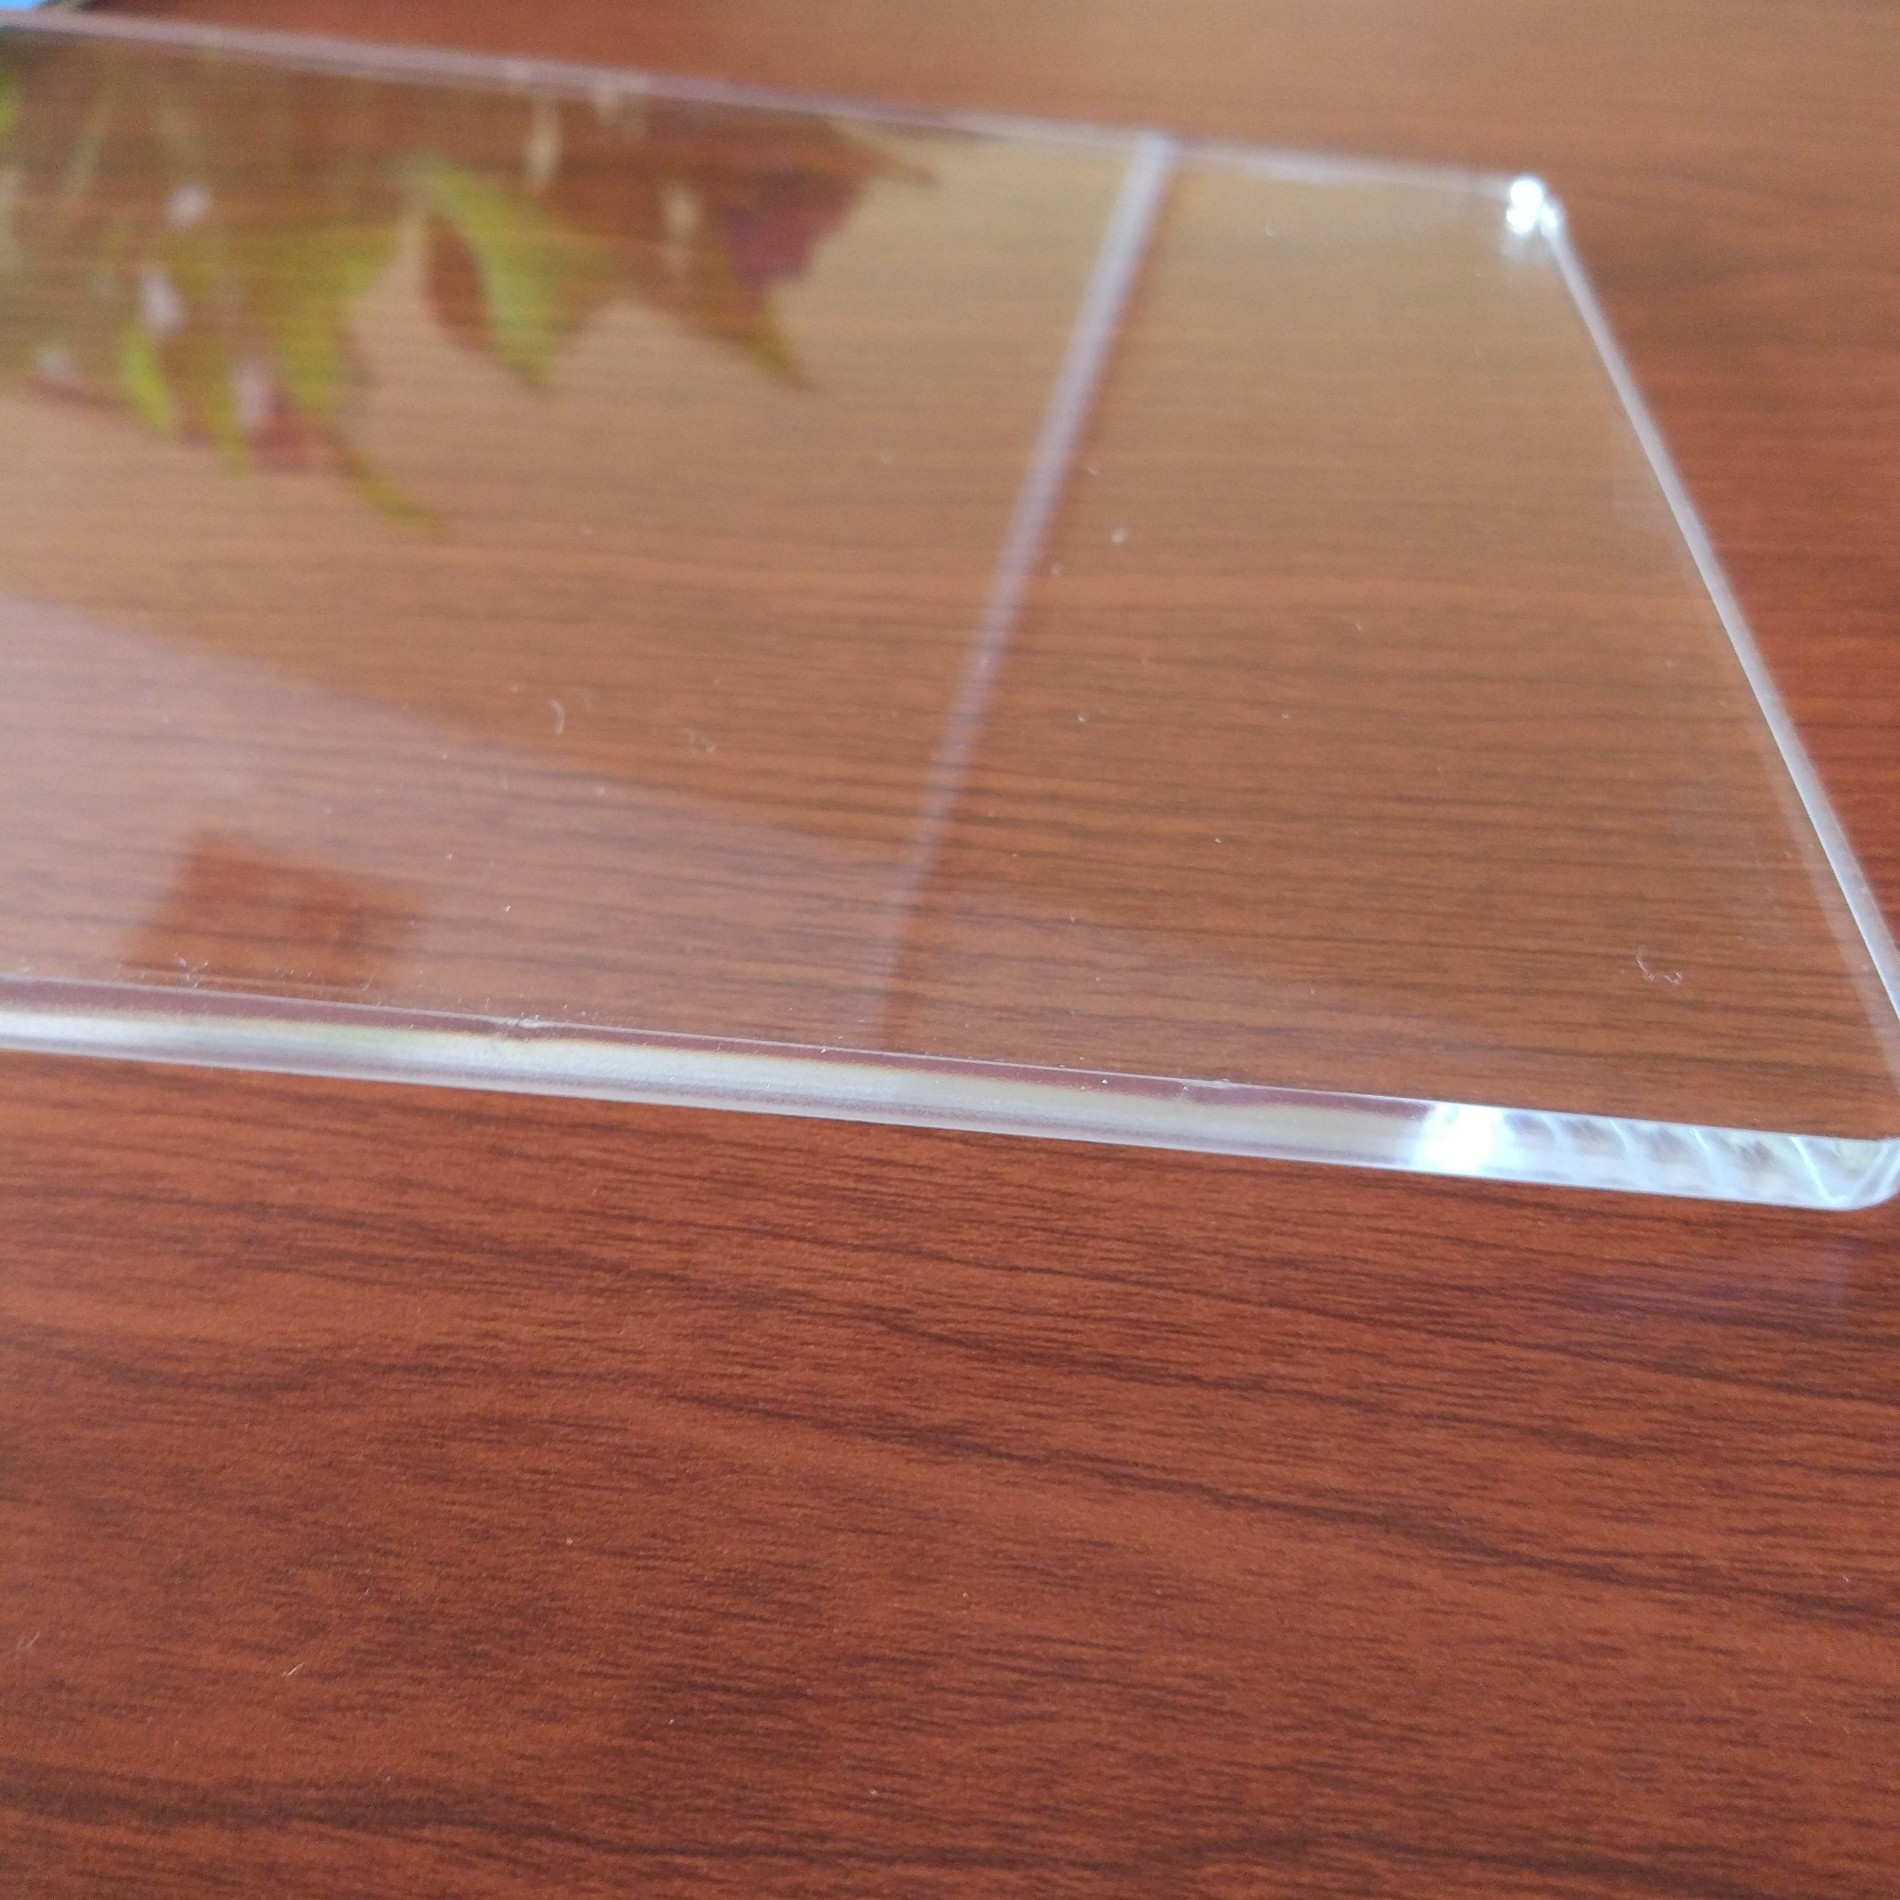 Acheter planche acrylique verre acrylique plexi feuille de plastique de verre,planche acrylique verre acrylique plexi feuille de plastique de verre Prix,planche acrylique verre acrylique plexi feuille de plastique de verre Marques,planche acrylique verre acrylique plexi feuille de plastique de verre Fabricant,planche acrylique verre acrylique plexi feuille de plastique de verre Quotes,planche acrylique verre acrylique plexi feuille de plastique de verre Société,